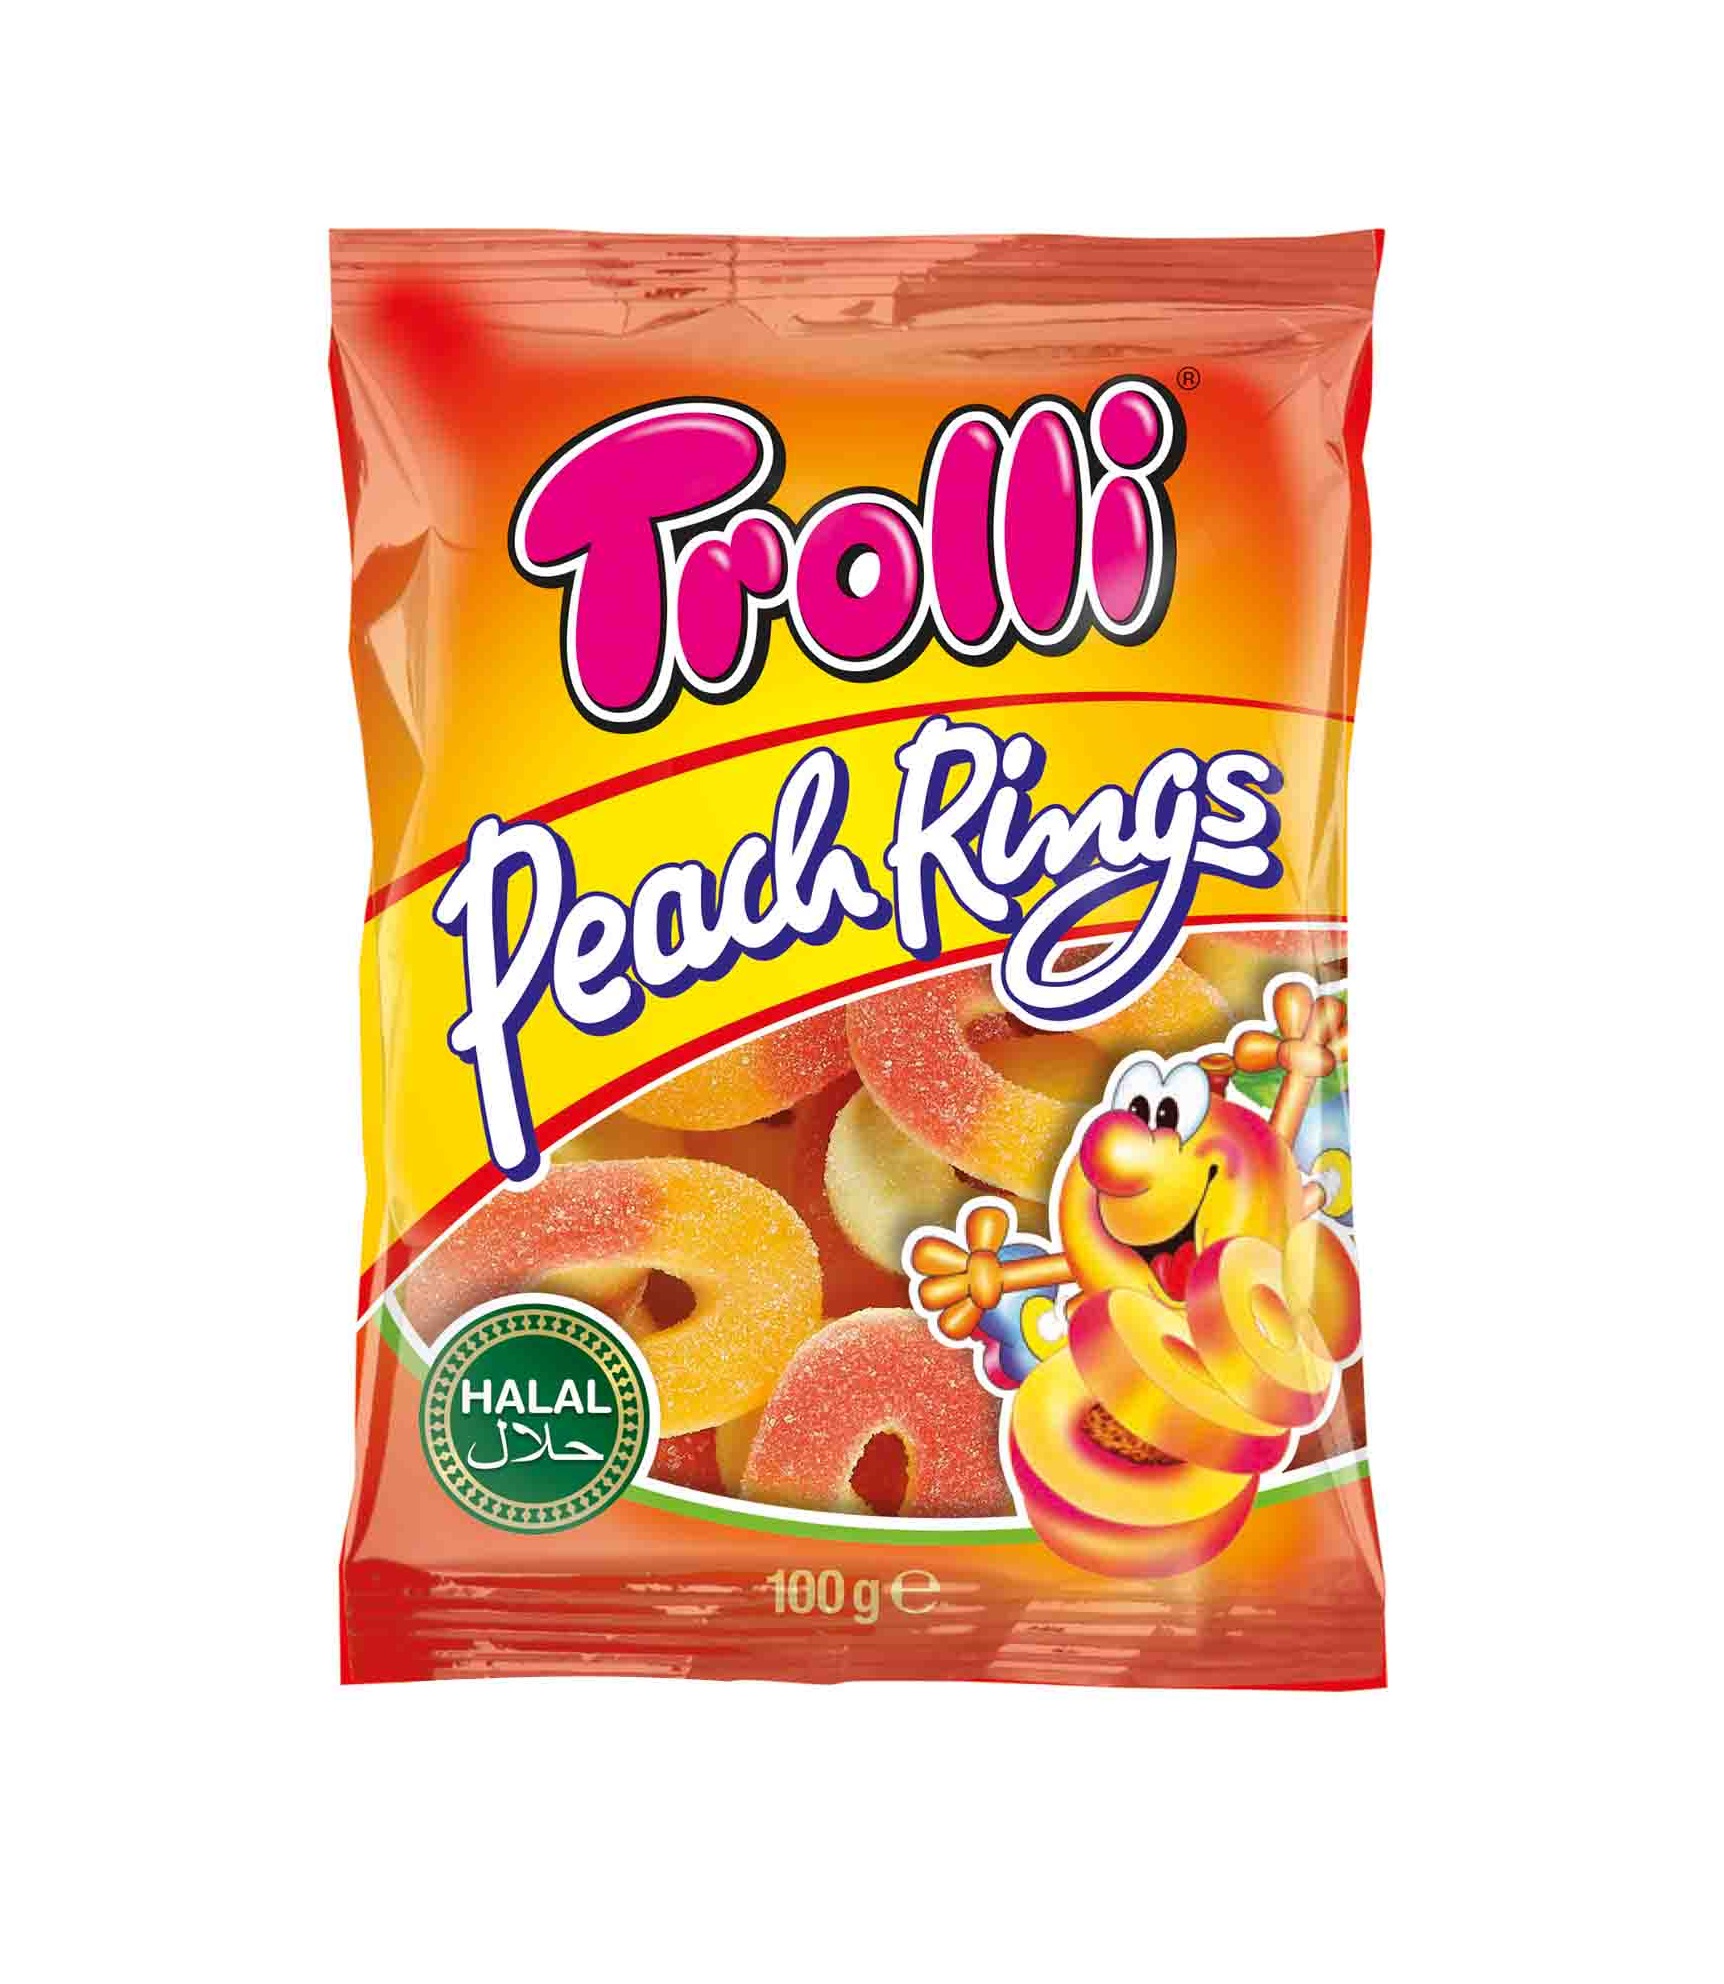 Trolli Peach Rings 100g